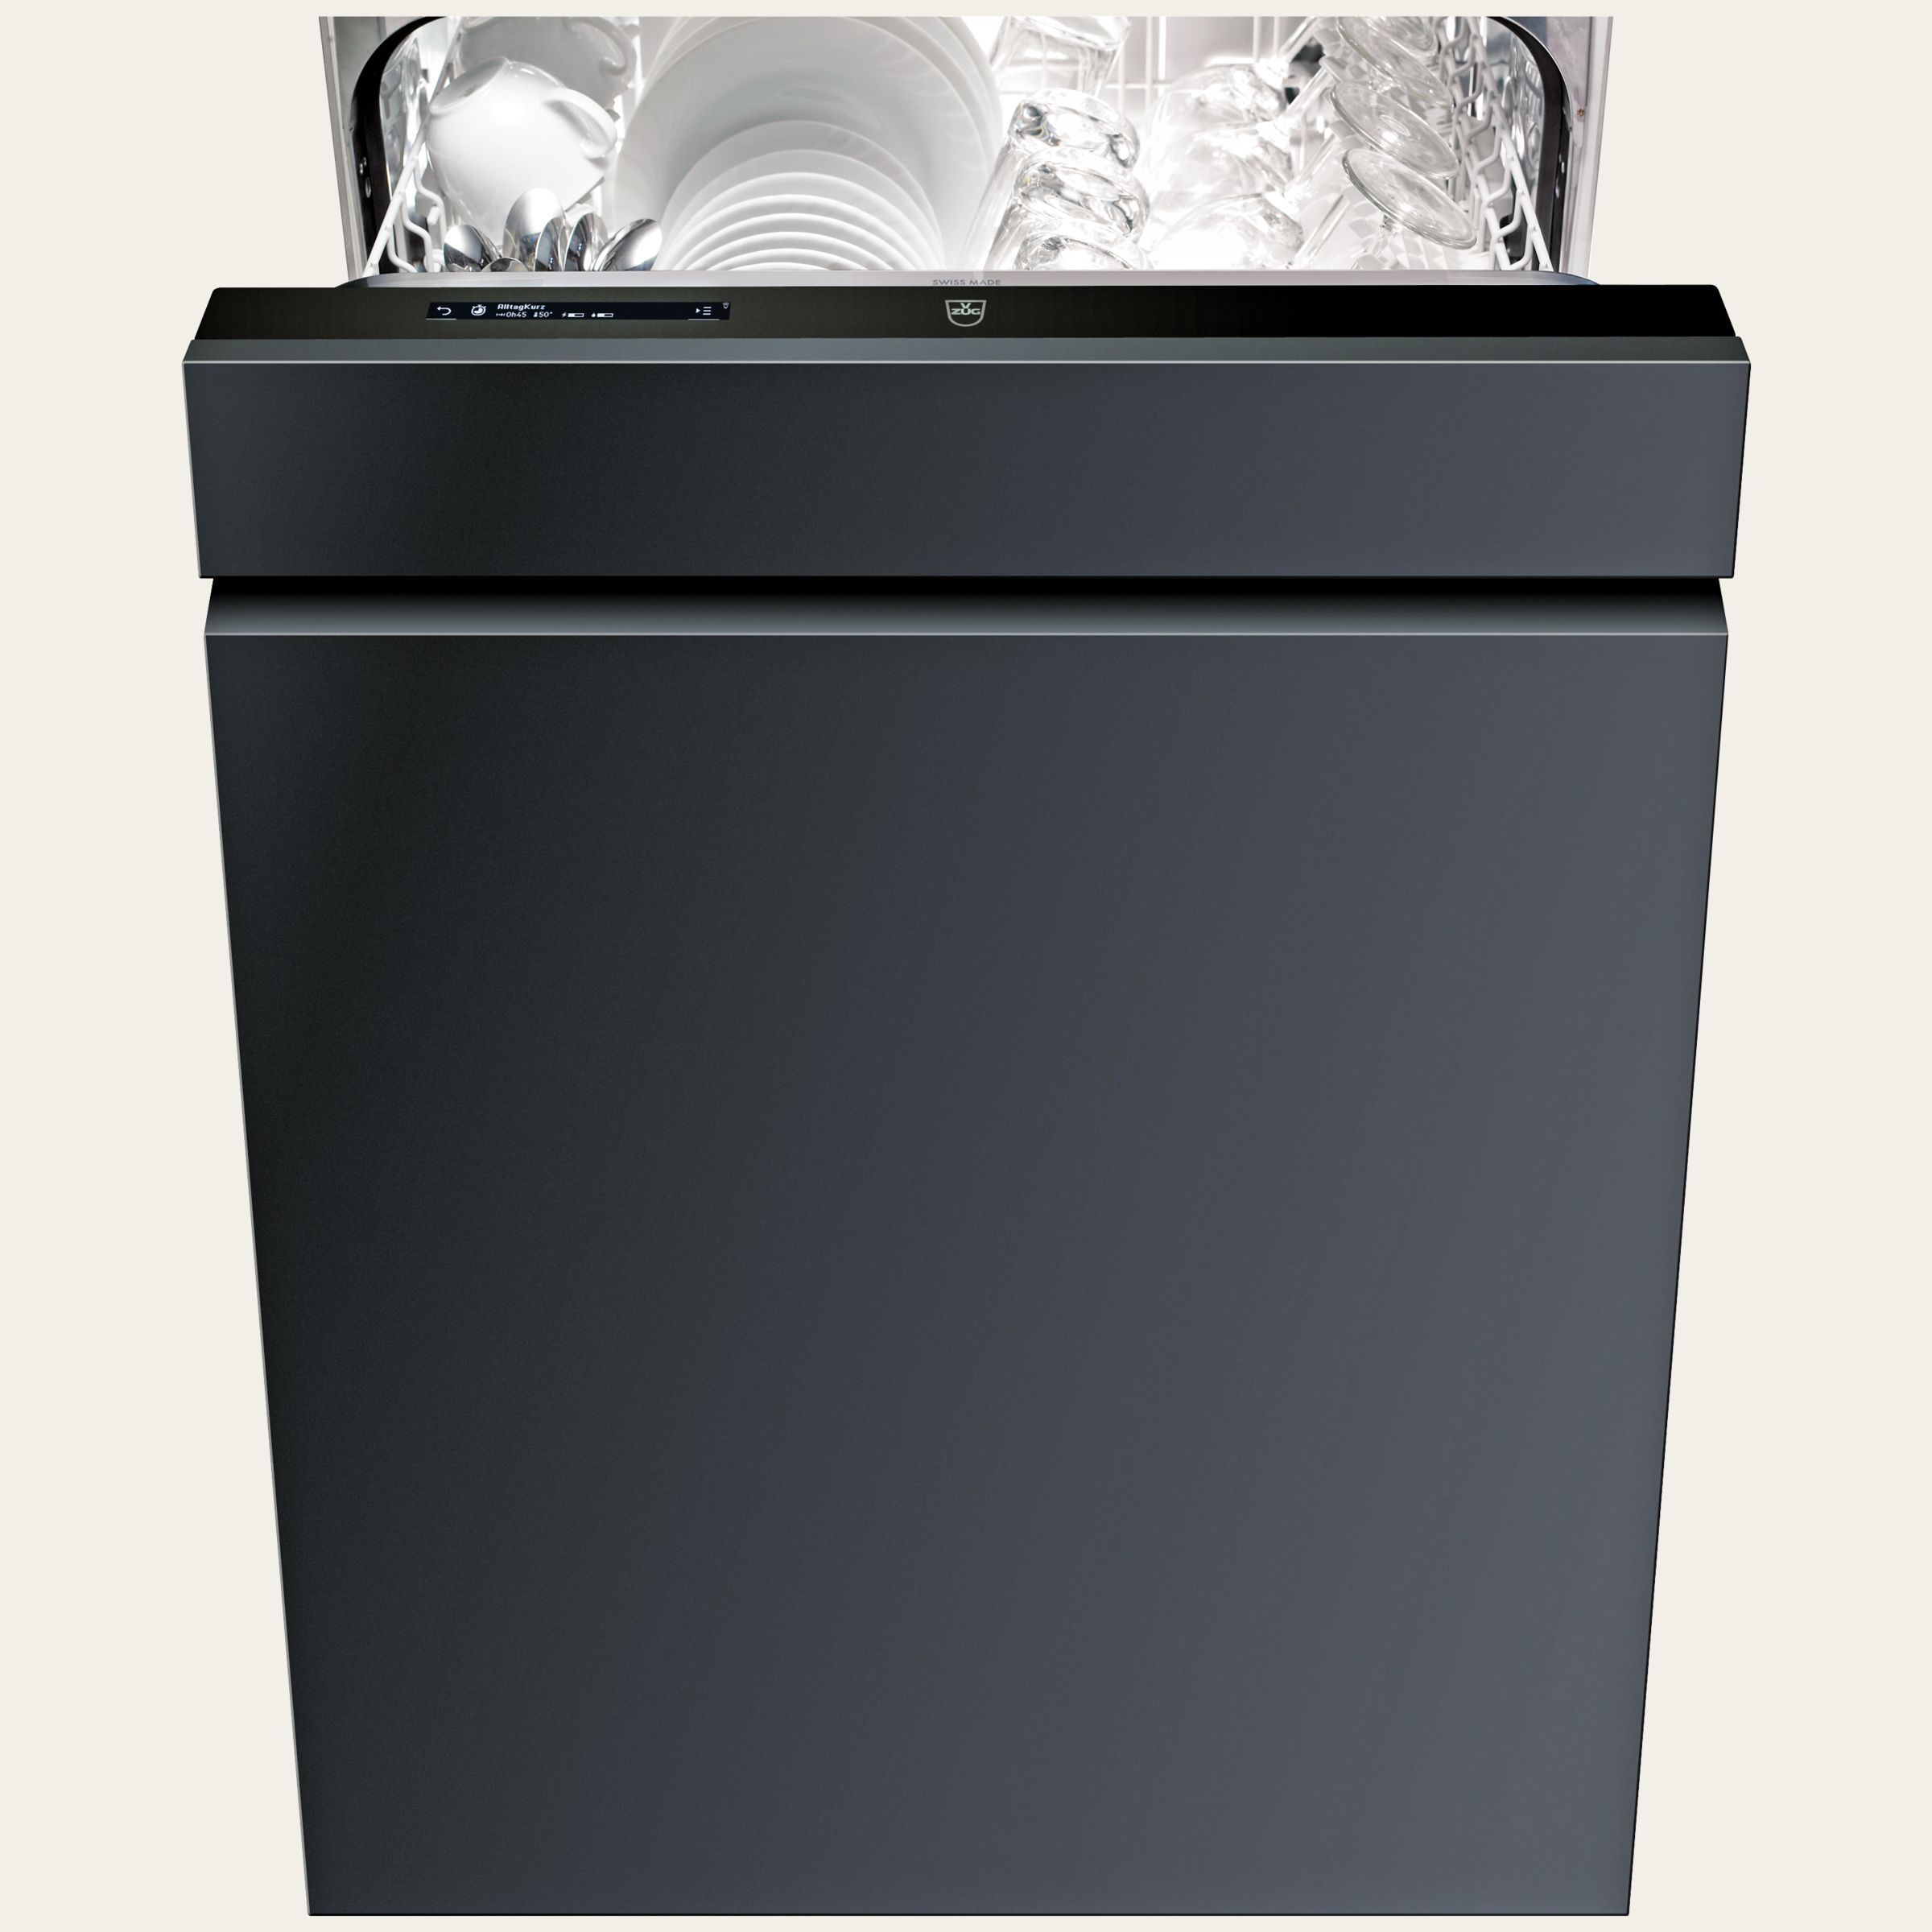 V-ZUG Lave-vaisselle AdoraVaisselle V6000, Norme largeur: 60 cm, Entièrement intégrable, V-ZUG-Home, Ecran LCD